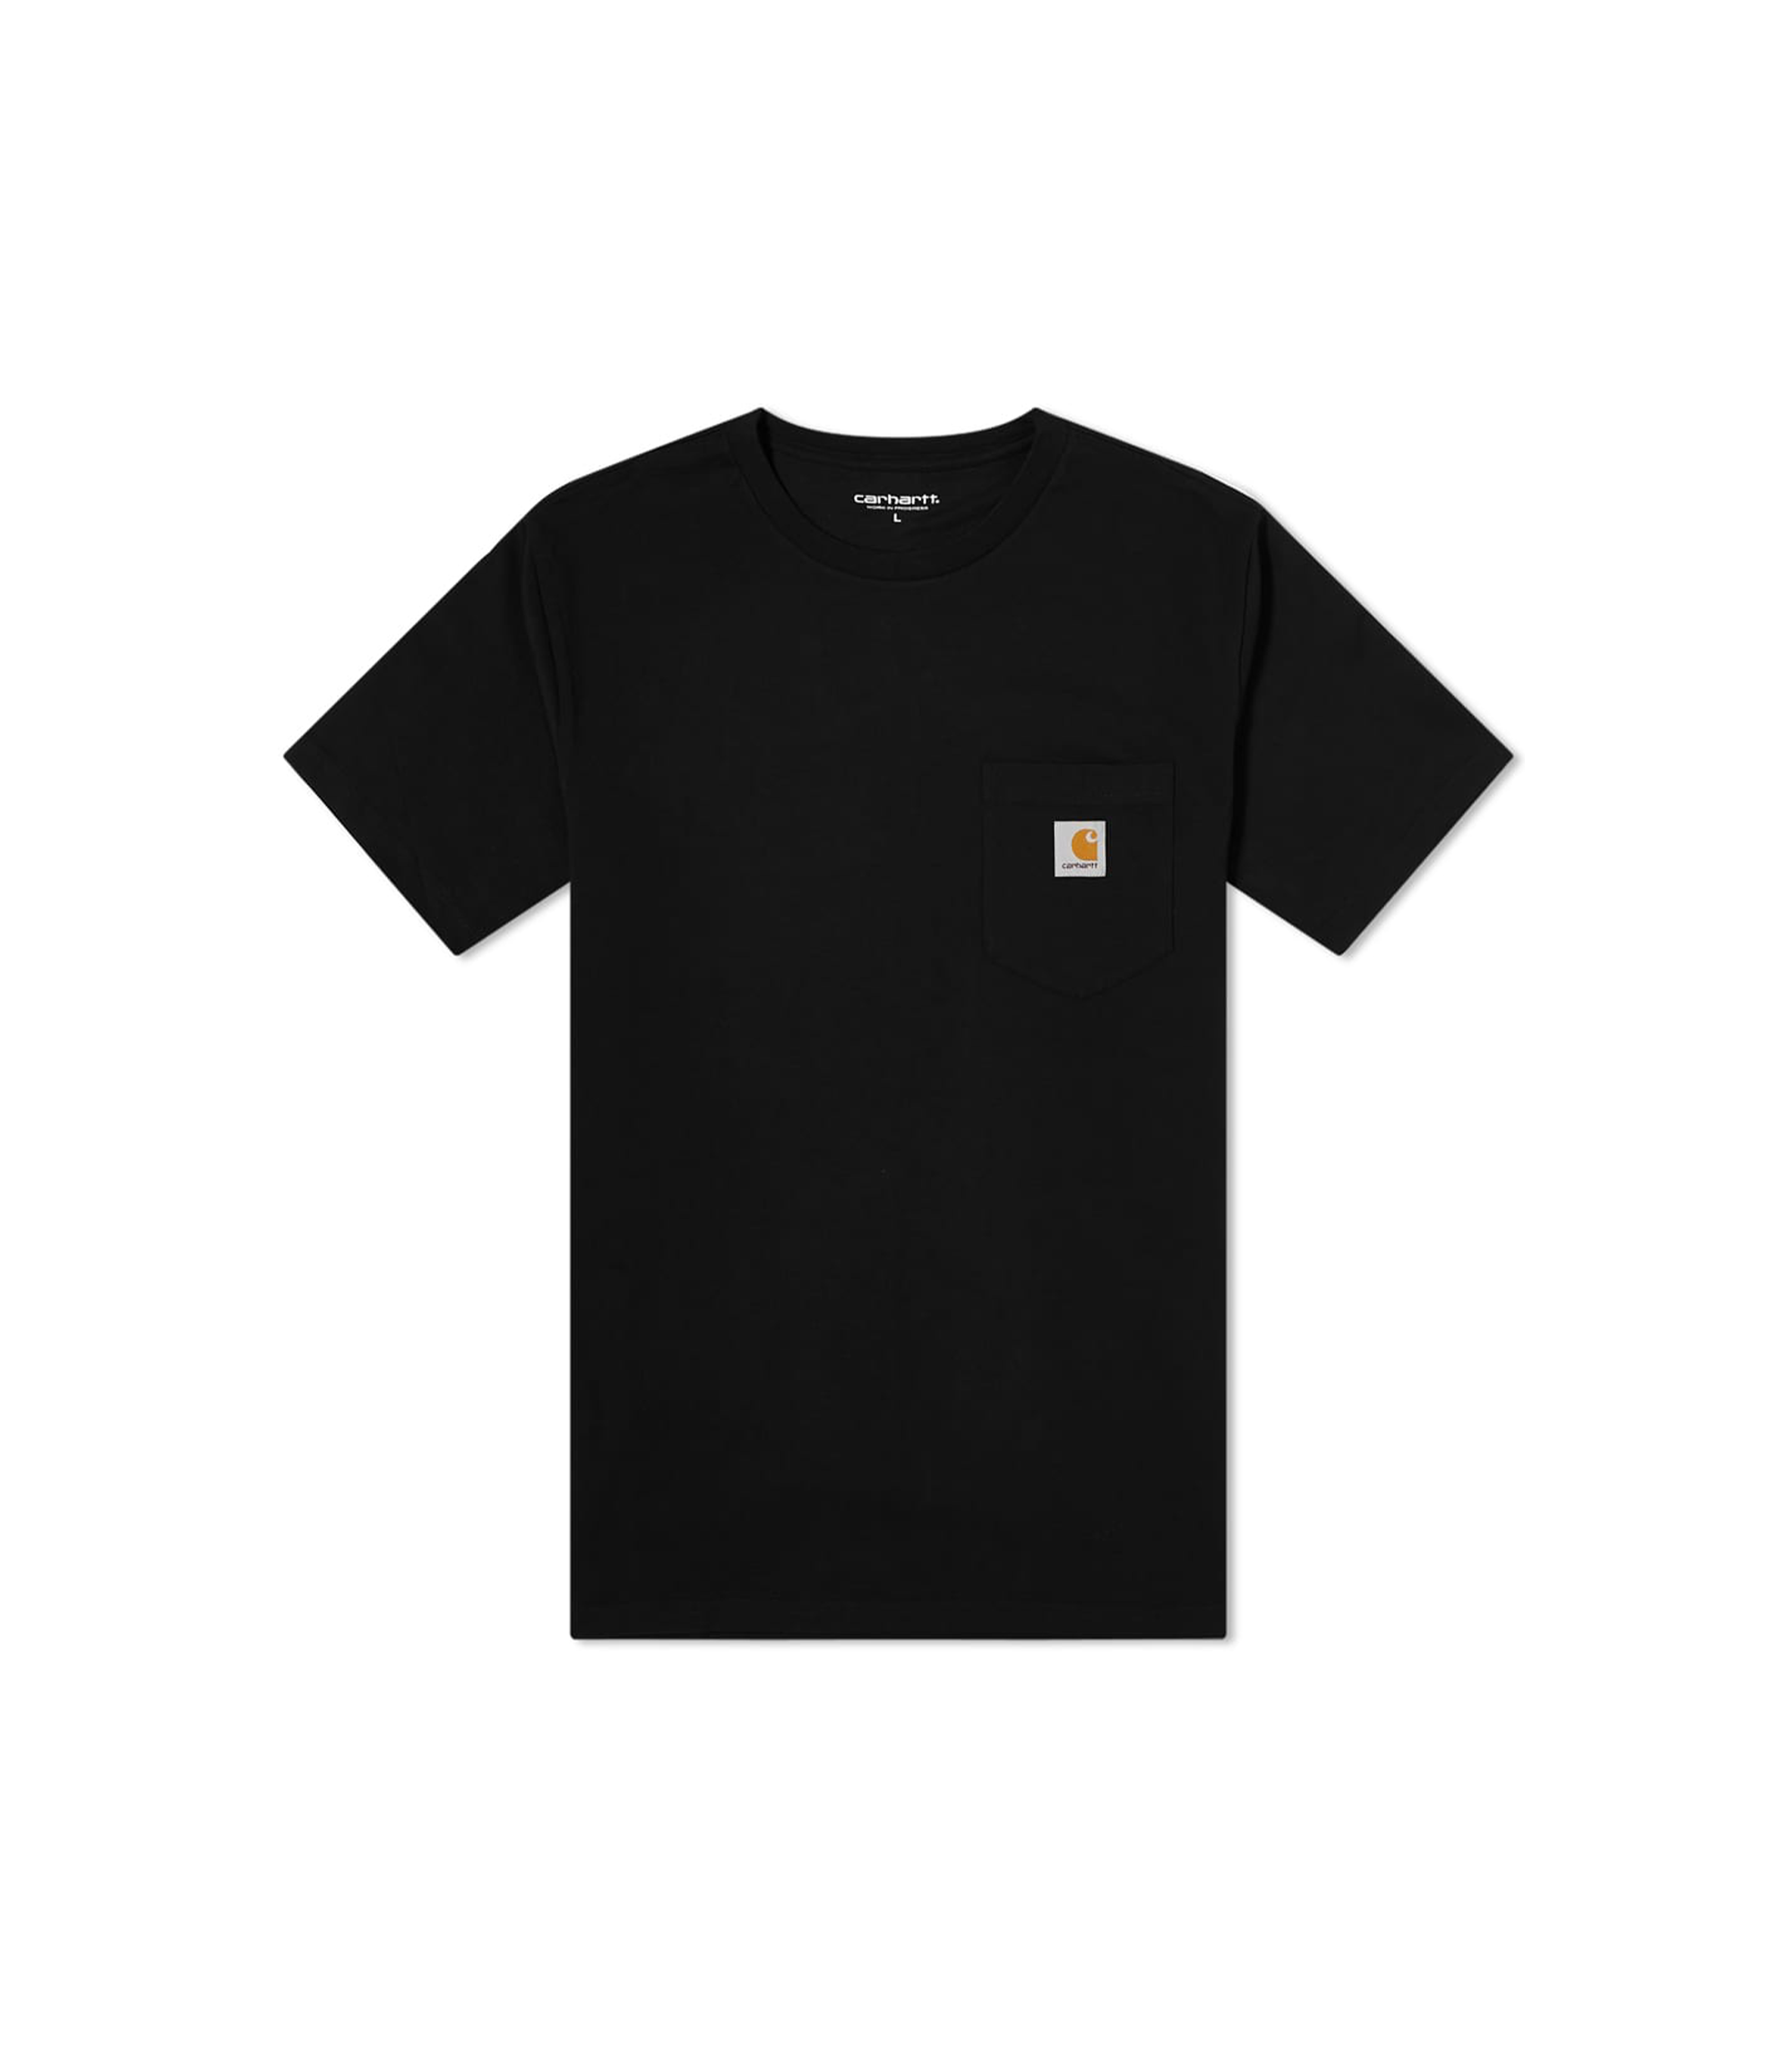 Pocket T-shirt - Black / Gold